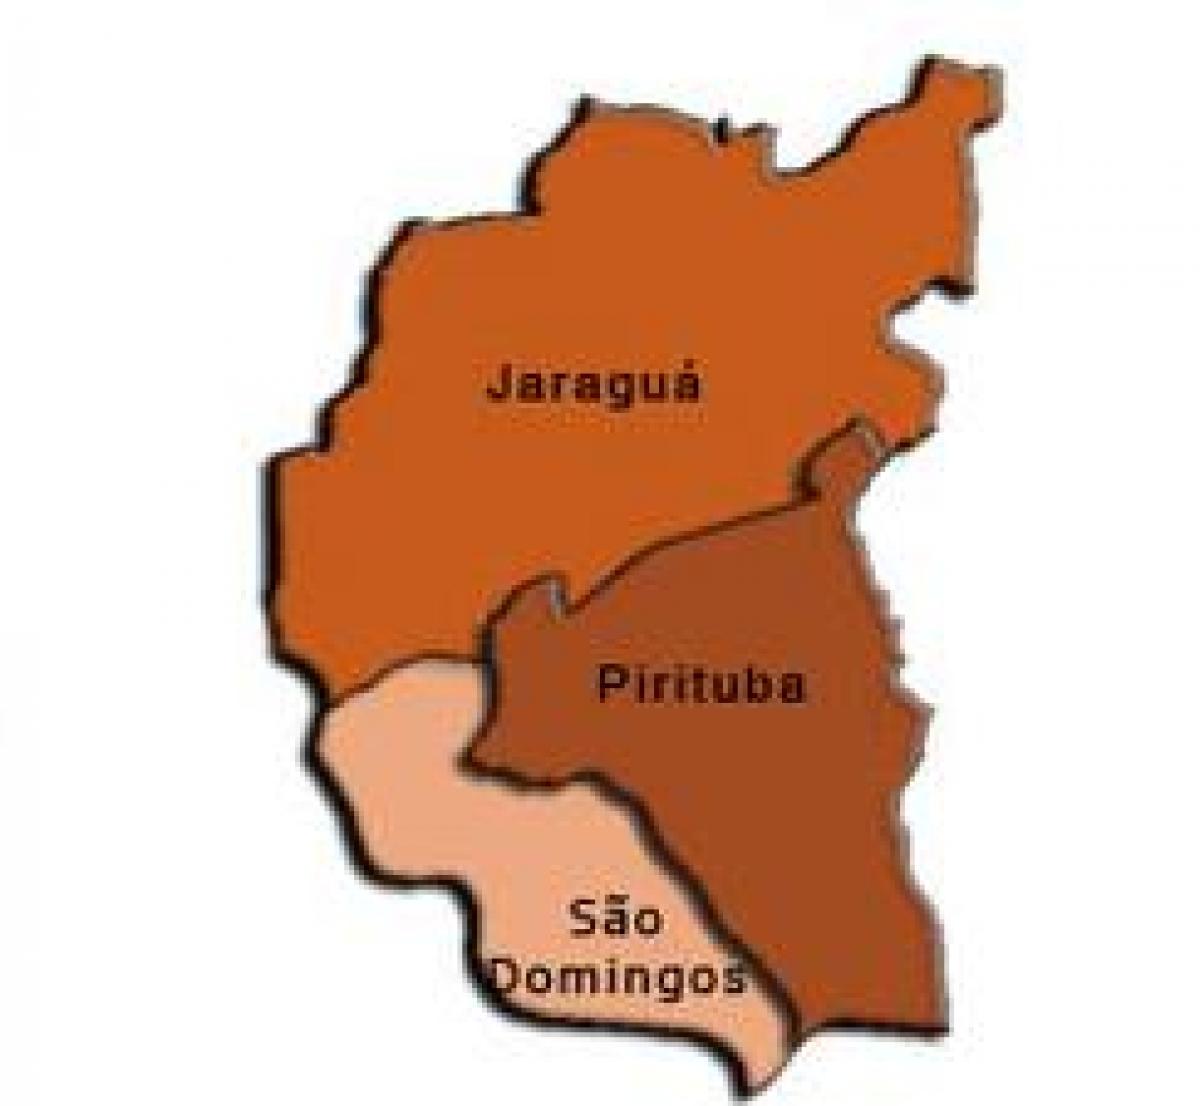 Kartta Pirituba-Jaraguá sub-prefektuurissa